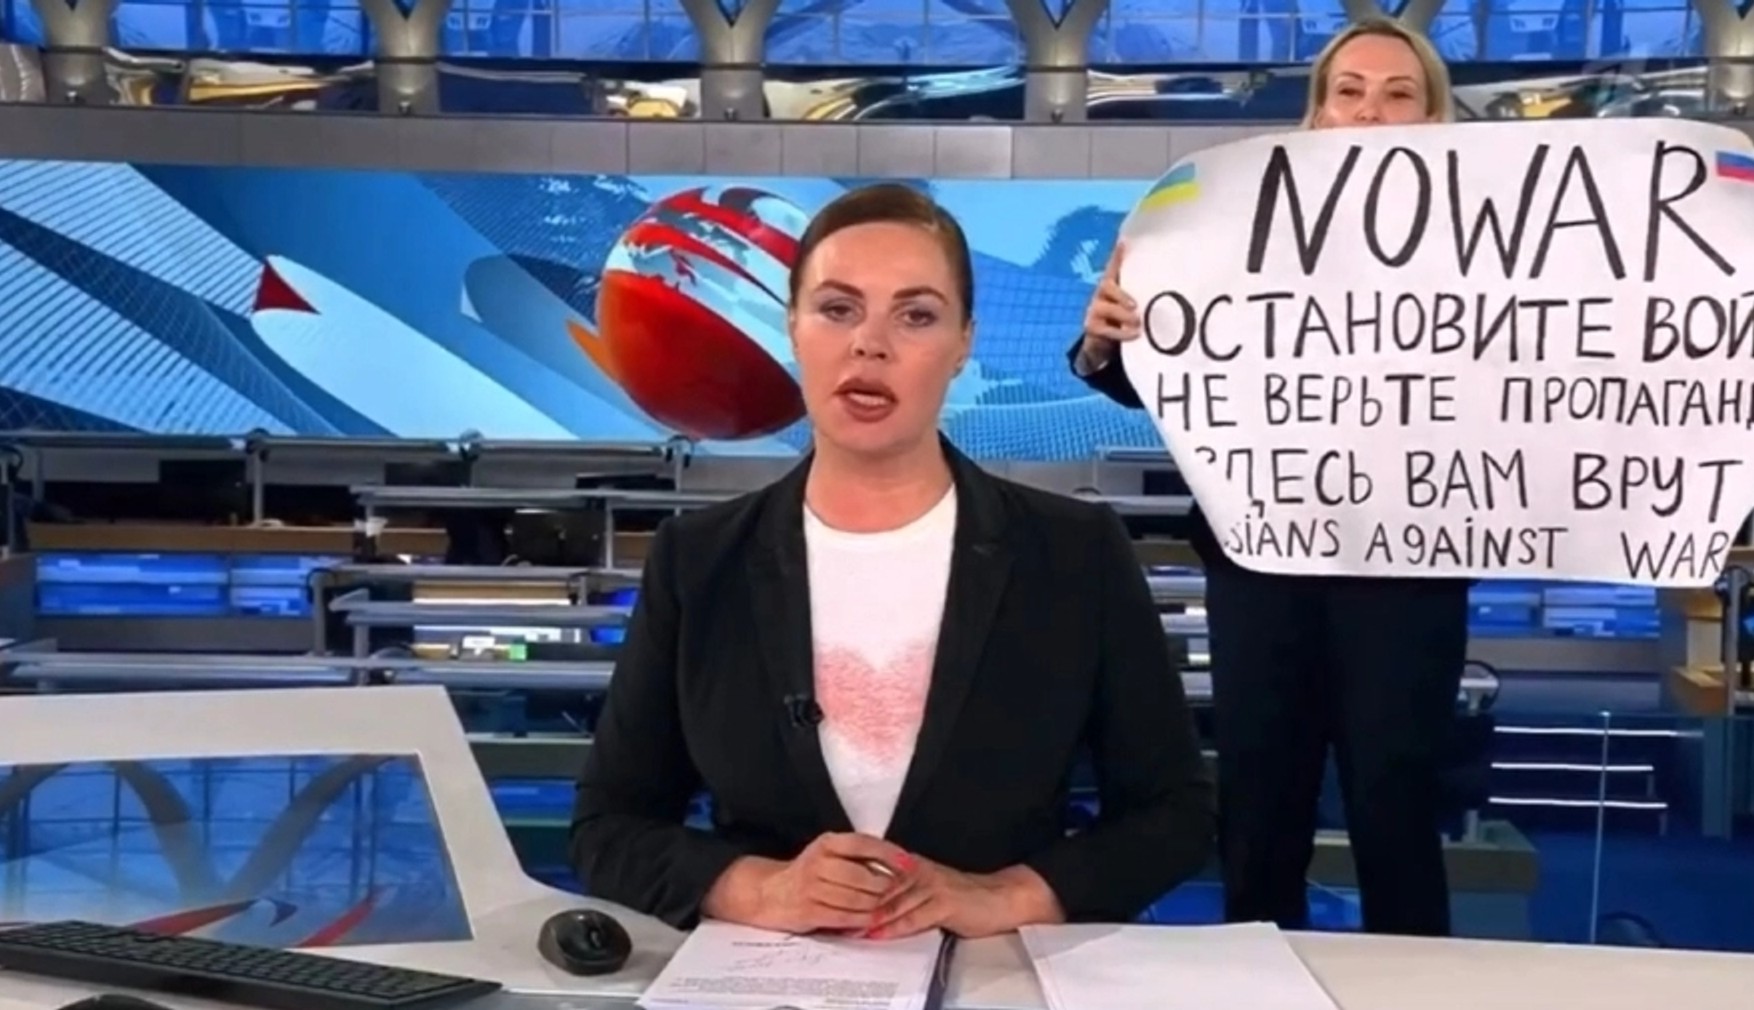 Бывшая сотрудница Первого канала, выступившая в эфире против войны в Украине, стала корреспондентом Welt